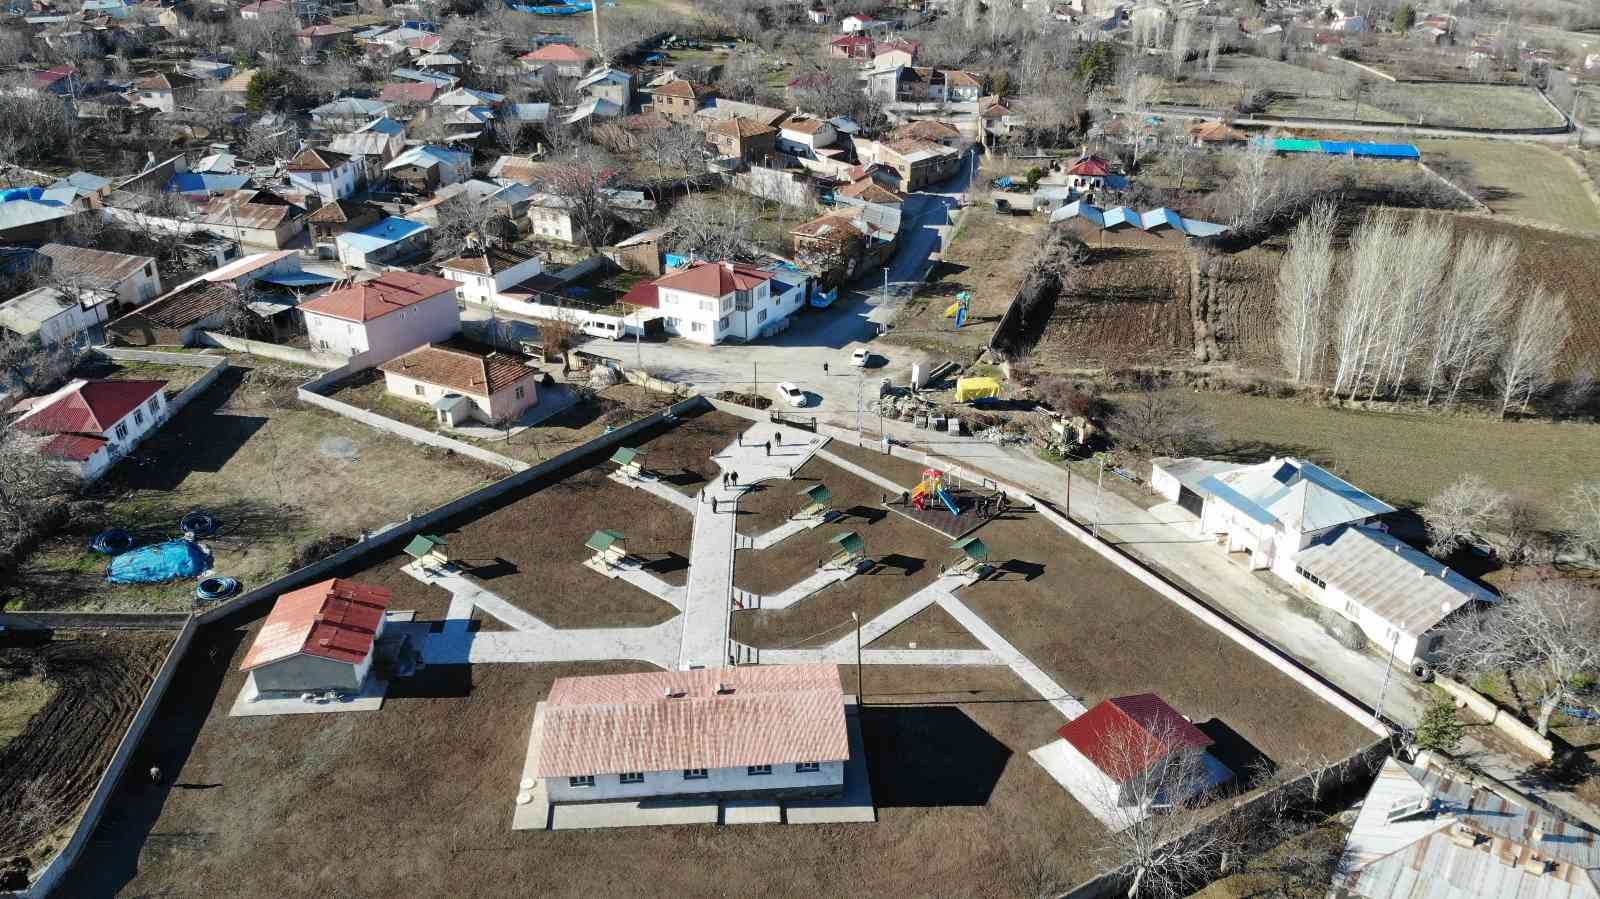 Bu köyde vatandaş devlet işbirliğiyle terörün izleri silindi #erzincan